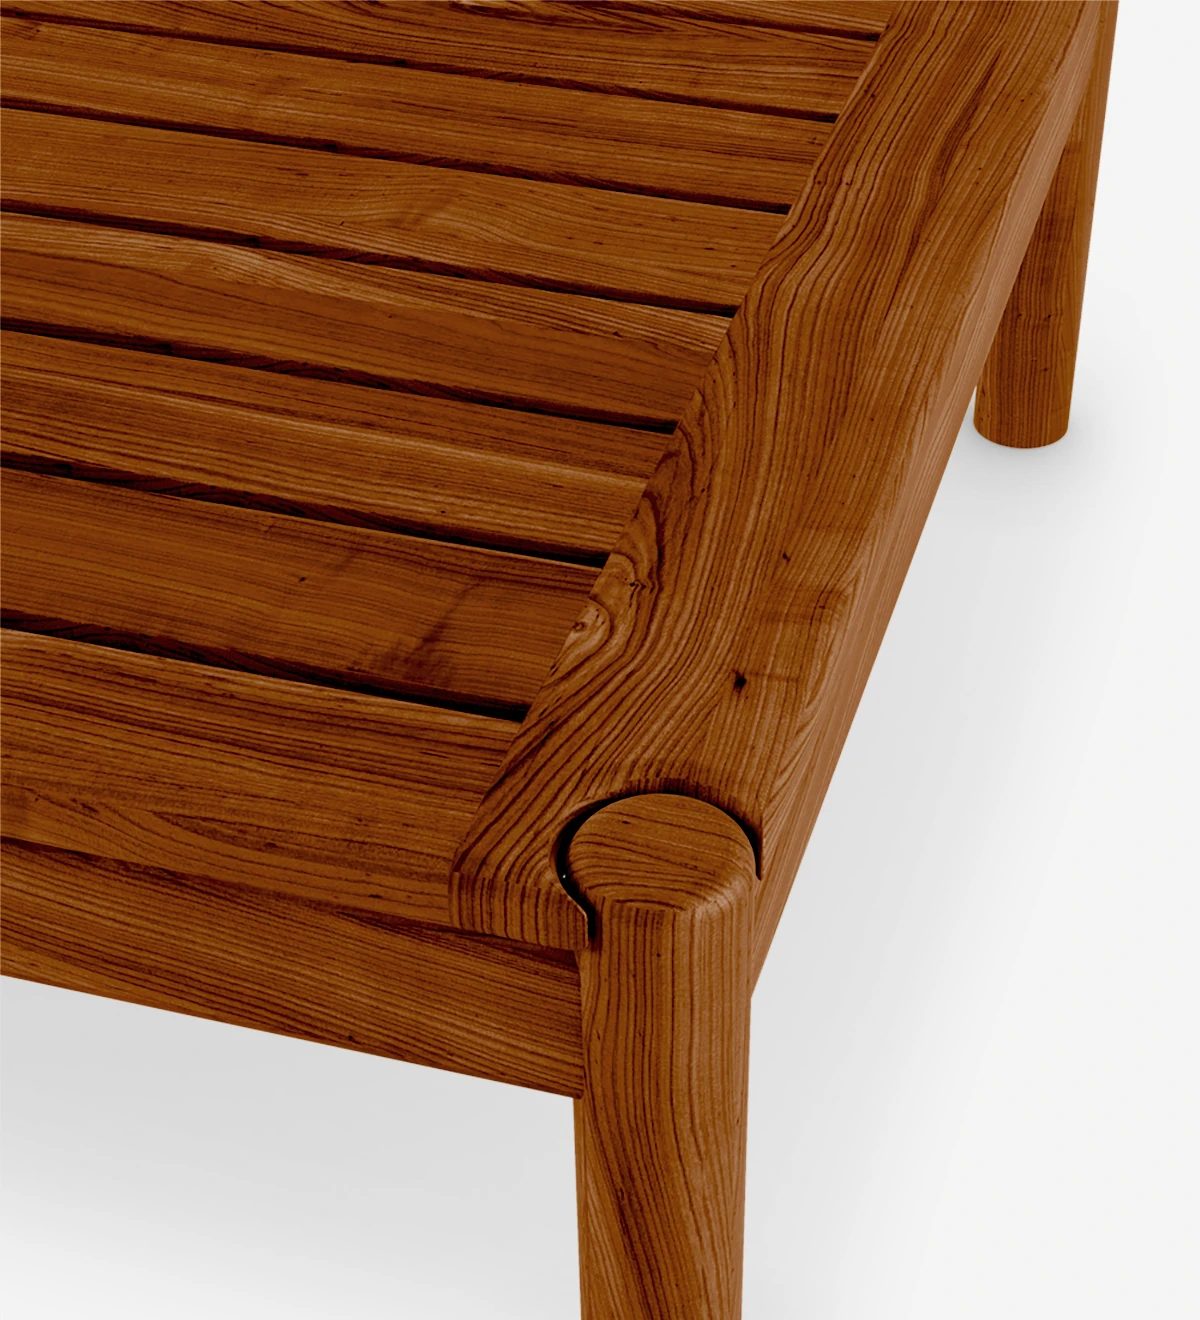 Mesa de centro quadrada em madeira natural cor mel.